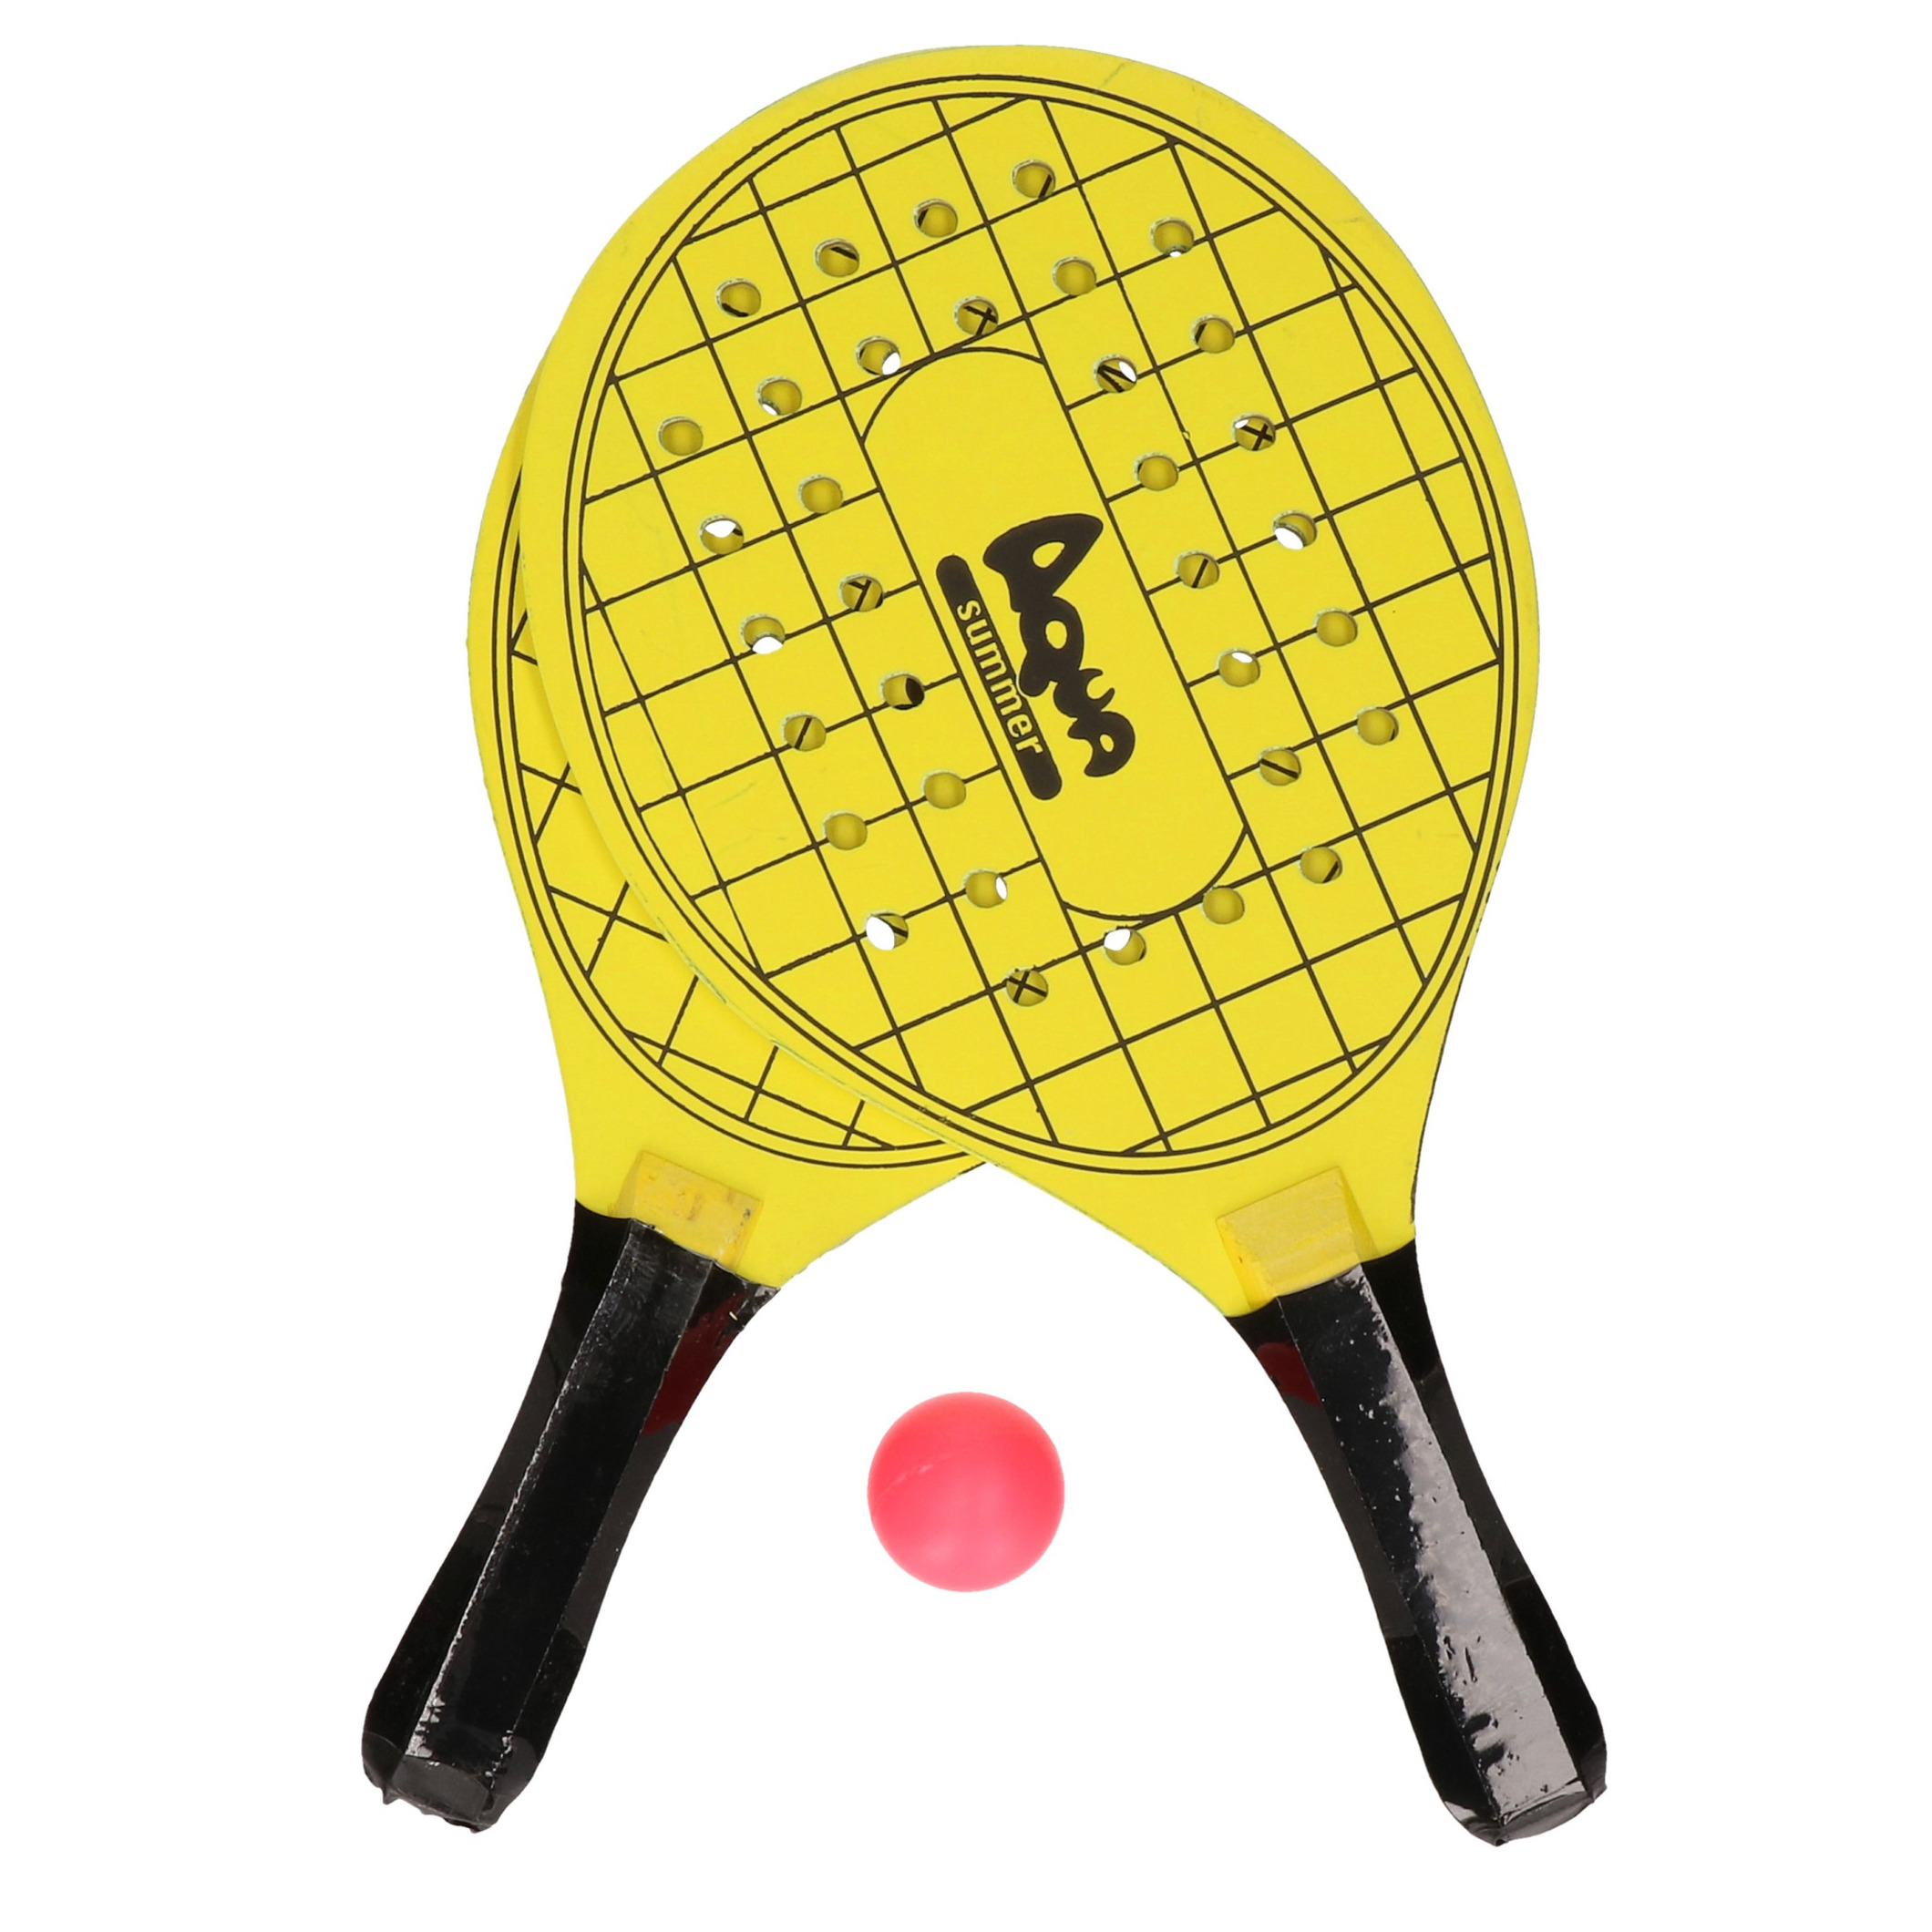 Actief speelgoed tennis-beachball setje geel met tennisracketmotief